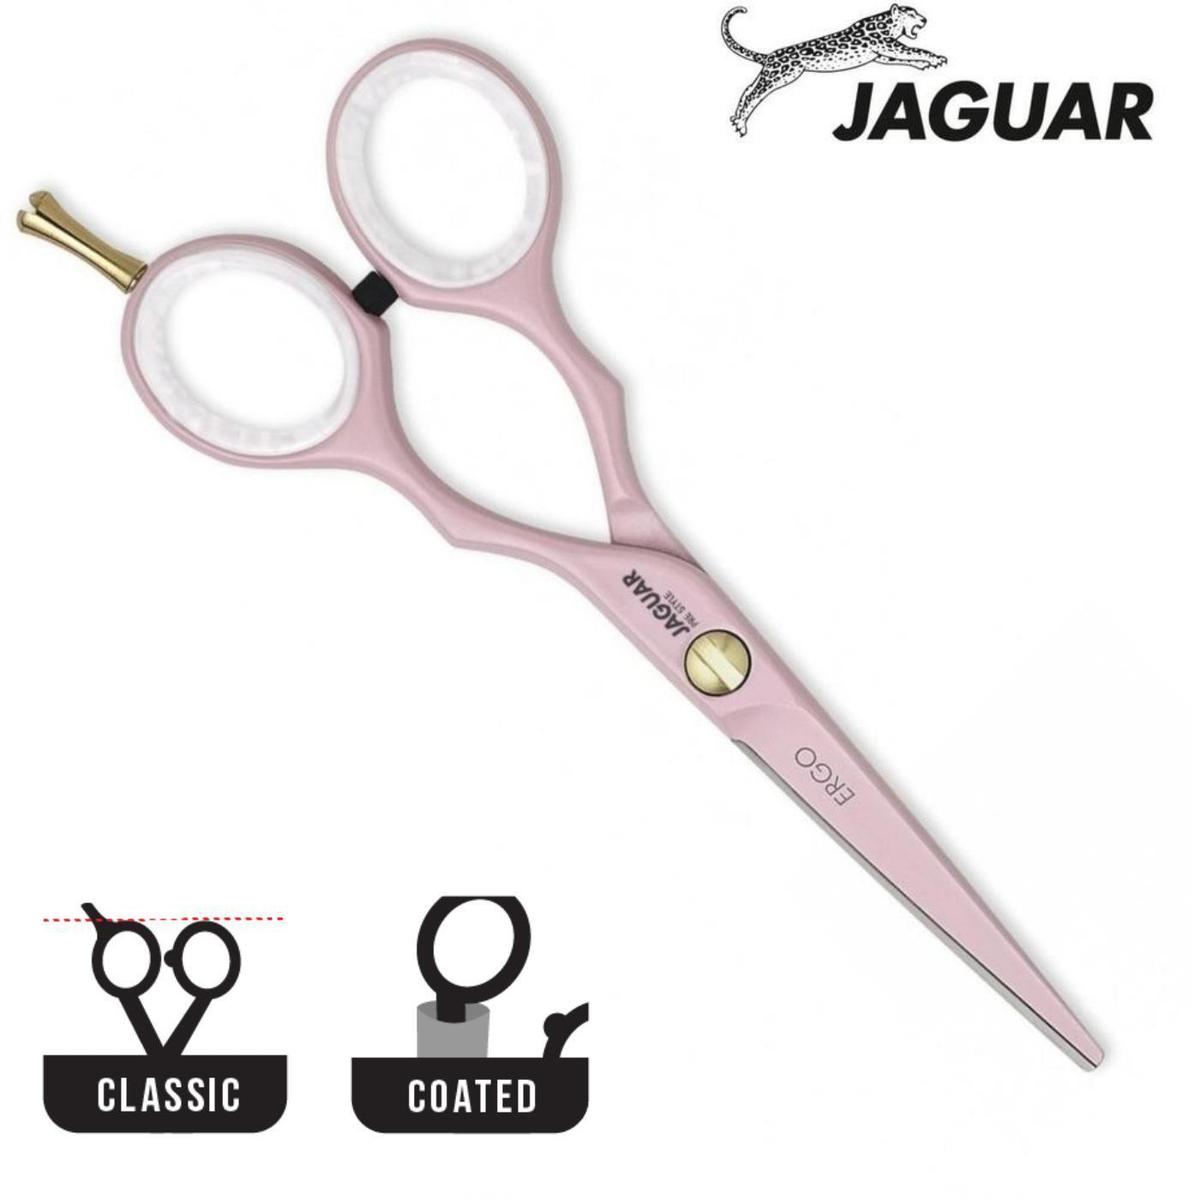 Jaguar Pink Ergo Haircutting Shear